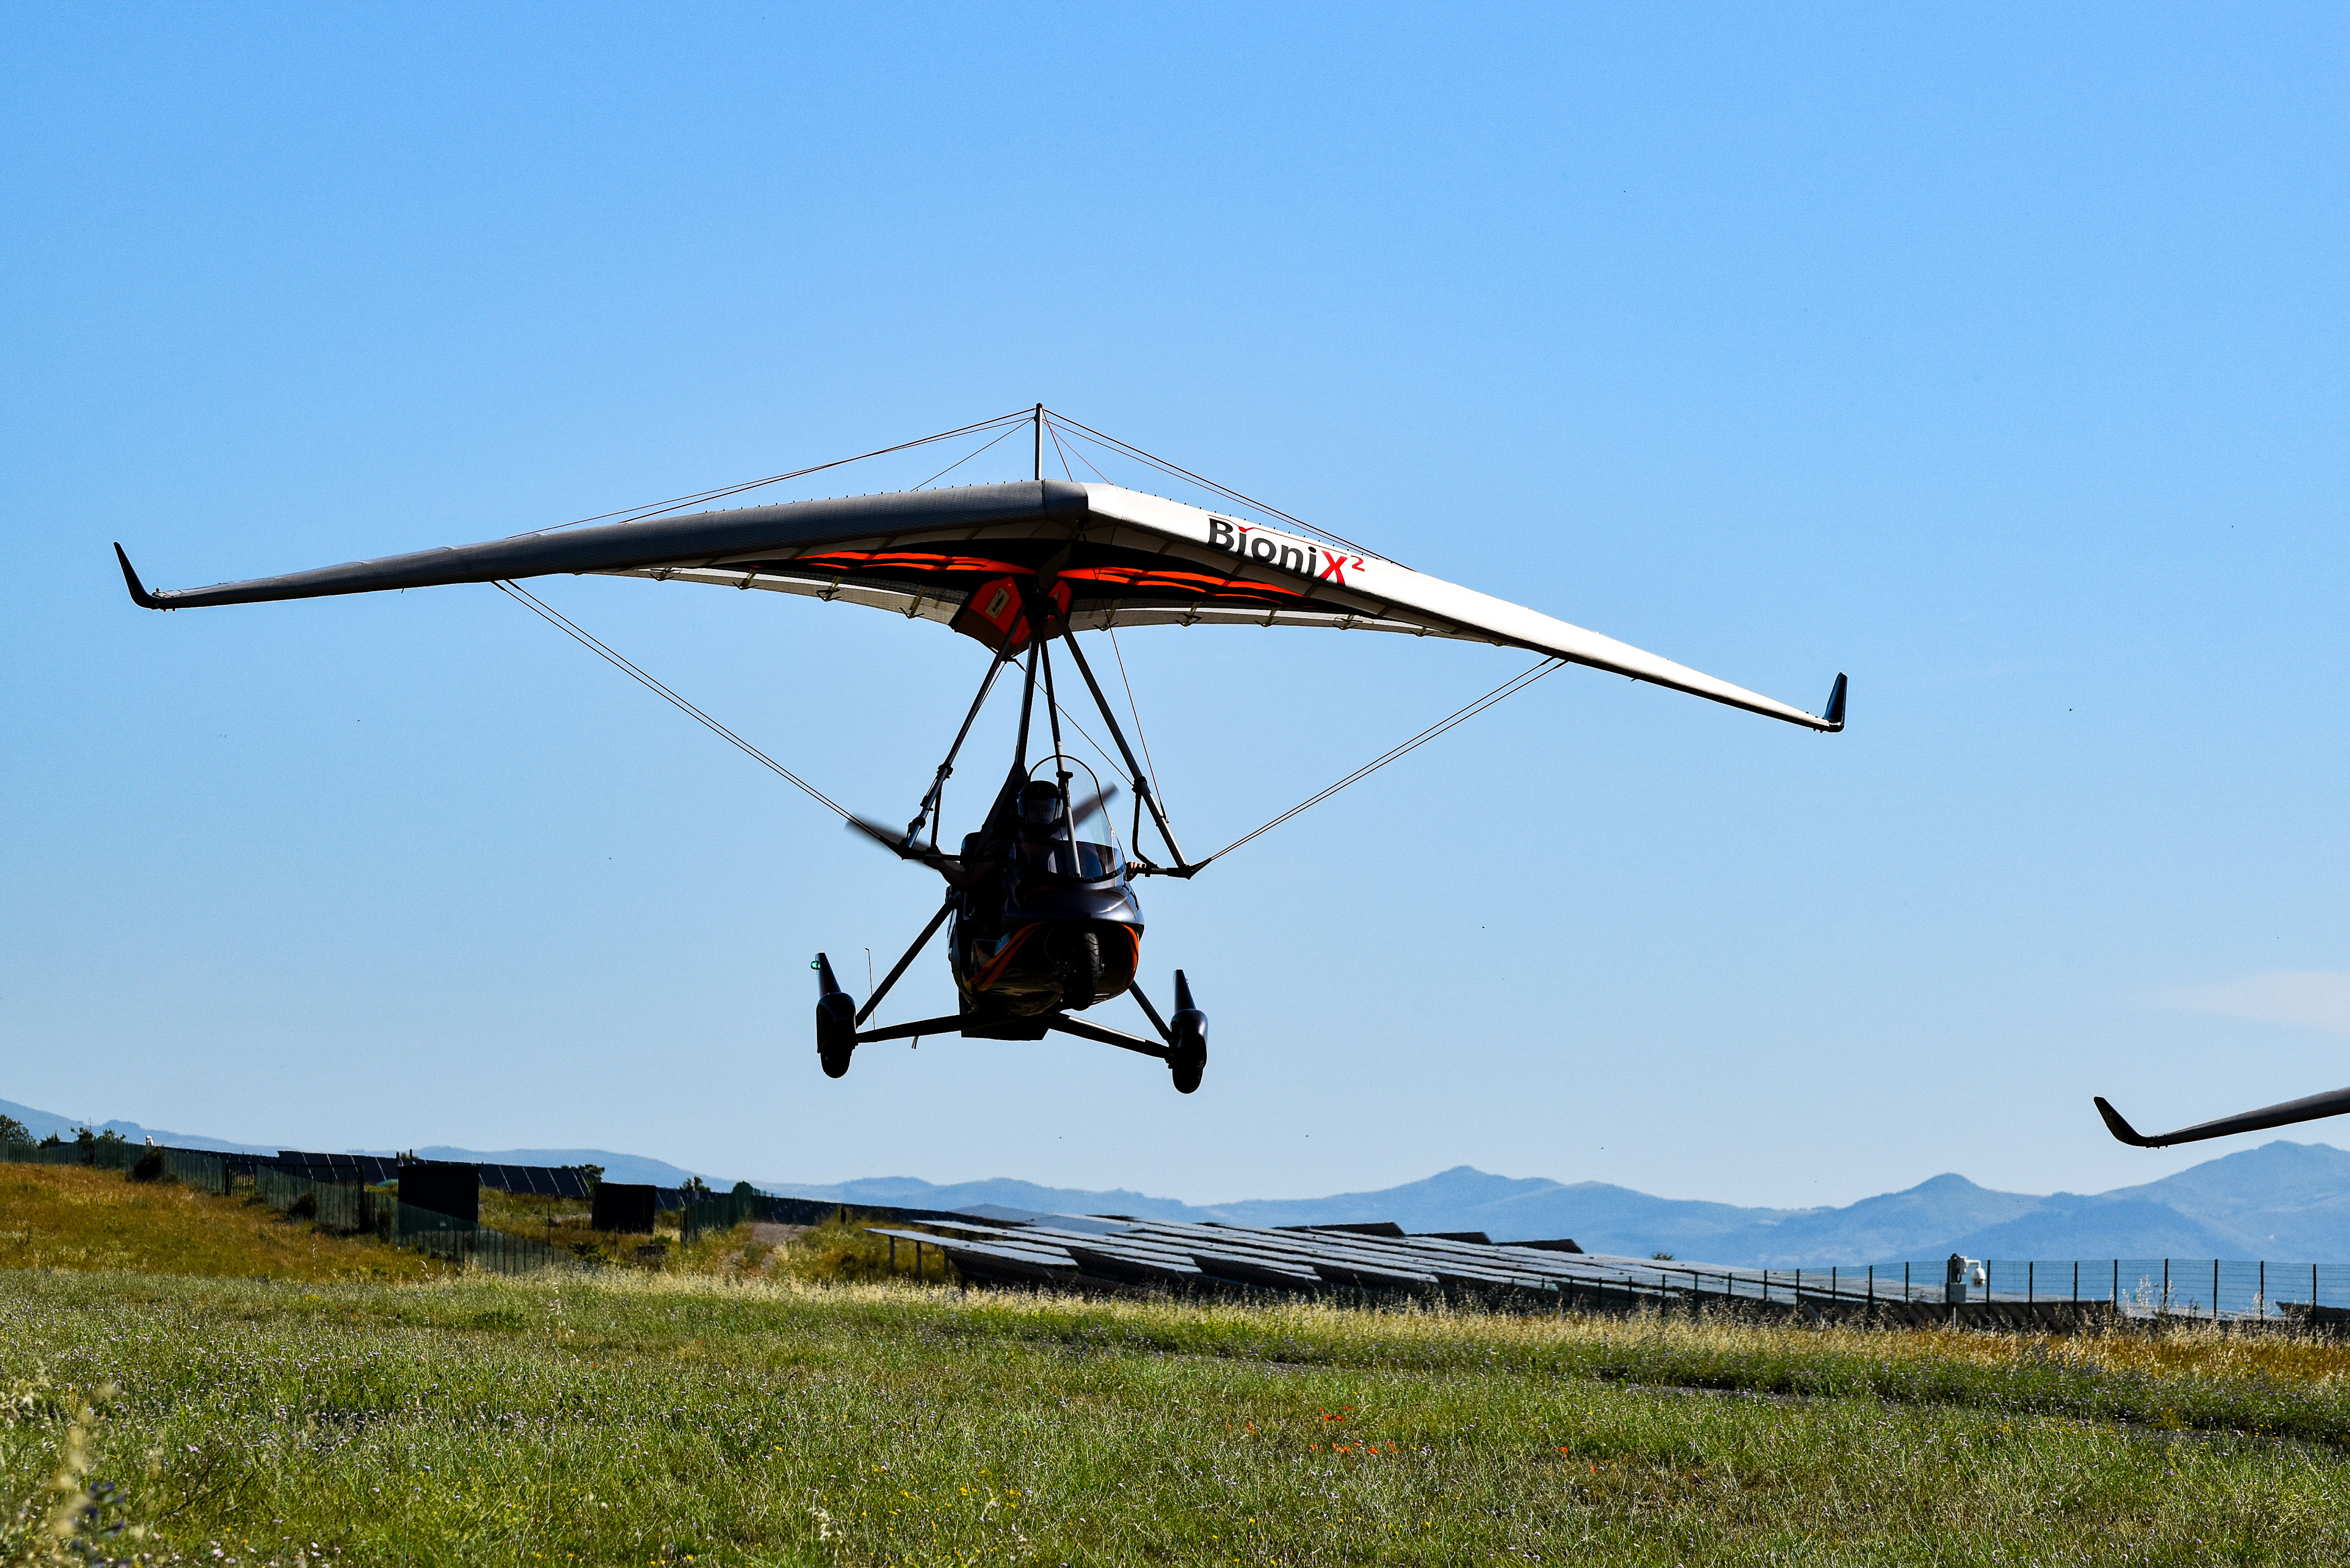 fly/en-vol-bionix2-tanarg-neo-en-vol-in-fly-ulm-pendulaire-ultralight-trike-wings-35.jpg